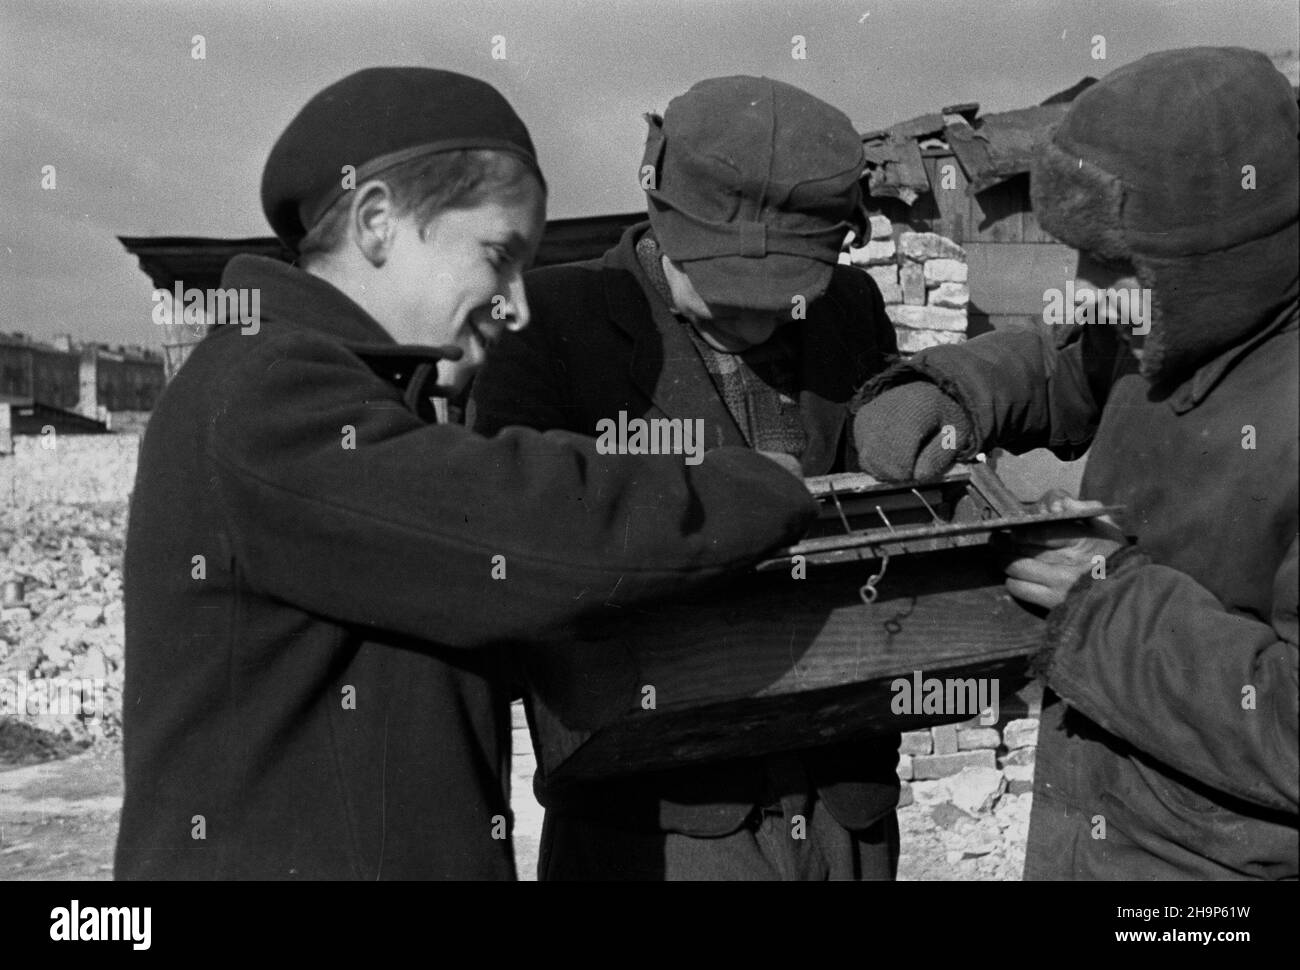 Warszawa, 1949-02. Naprawa go³êbnika.  mw  PAP/Wiktor Janik    Dok³adny dzieñ wydarzenia nieustalony.      Warsaw, Feb. 1949. Repairing a dovecote.  mw  PAP Stock Photo